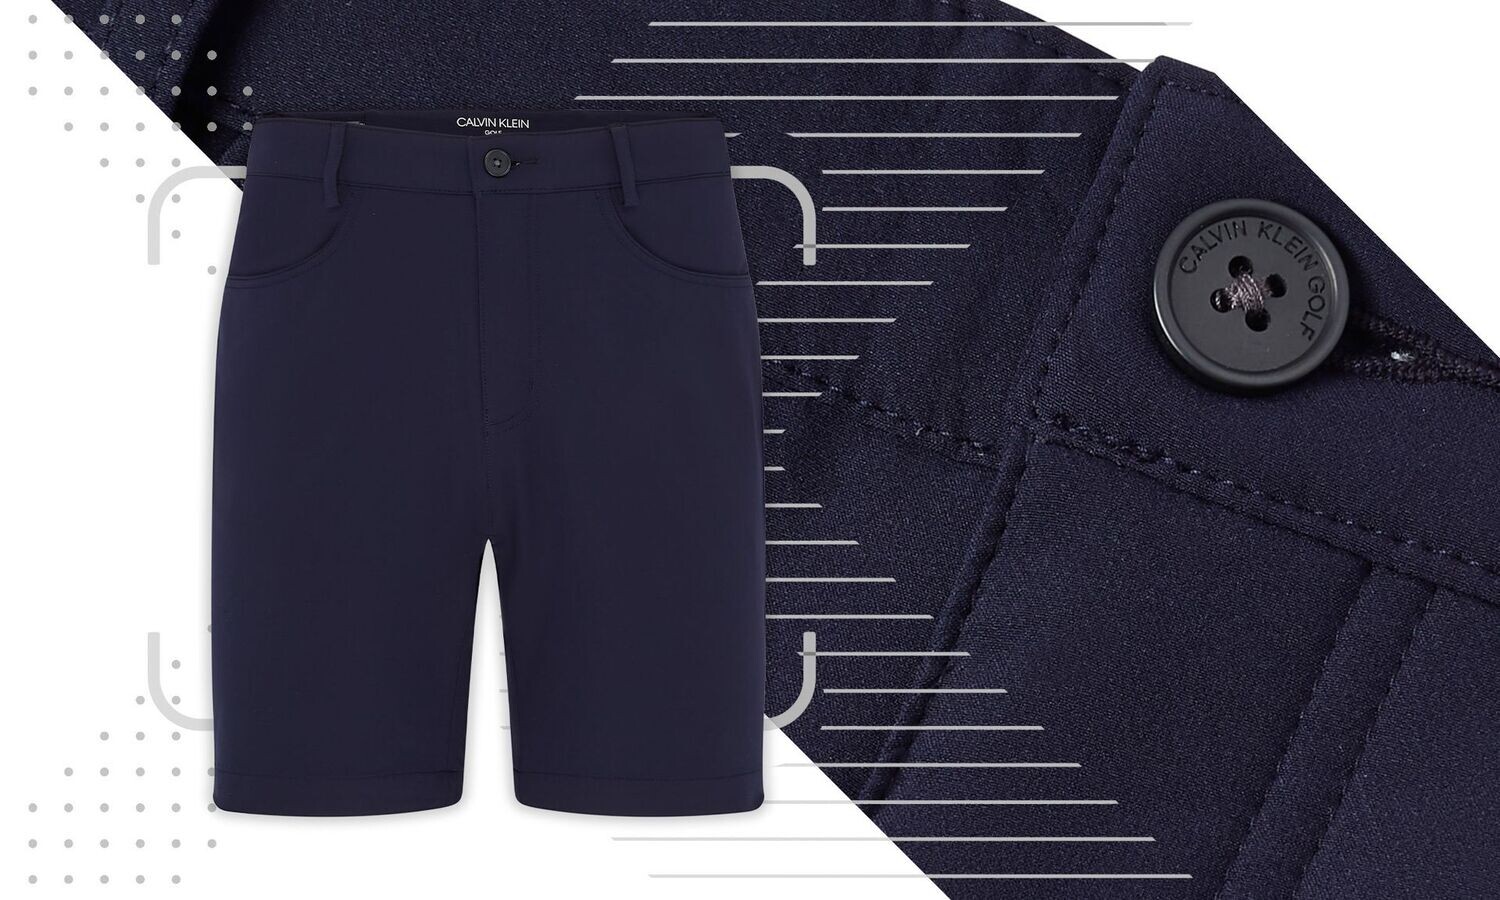 Calvin Klein Genius 4-Way Stretch Golf Shorts - Dark Navy, Size: 32 Inch